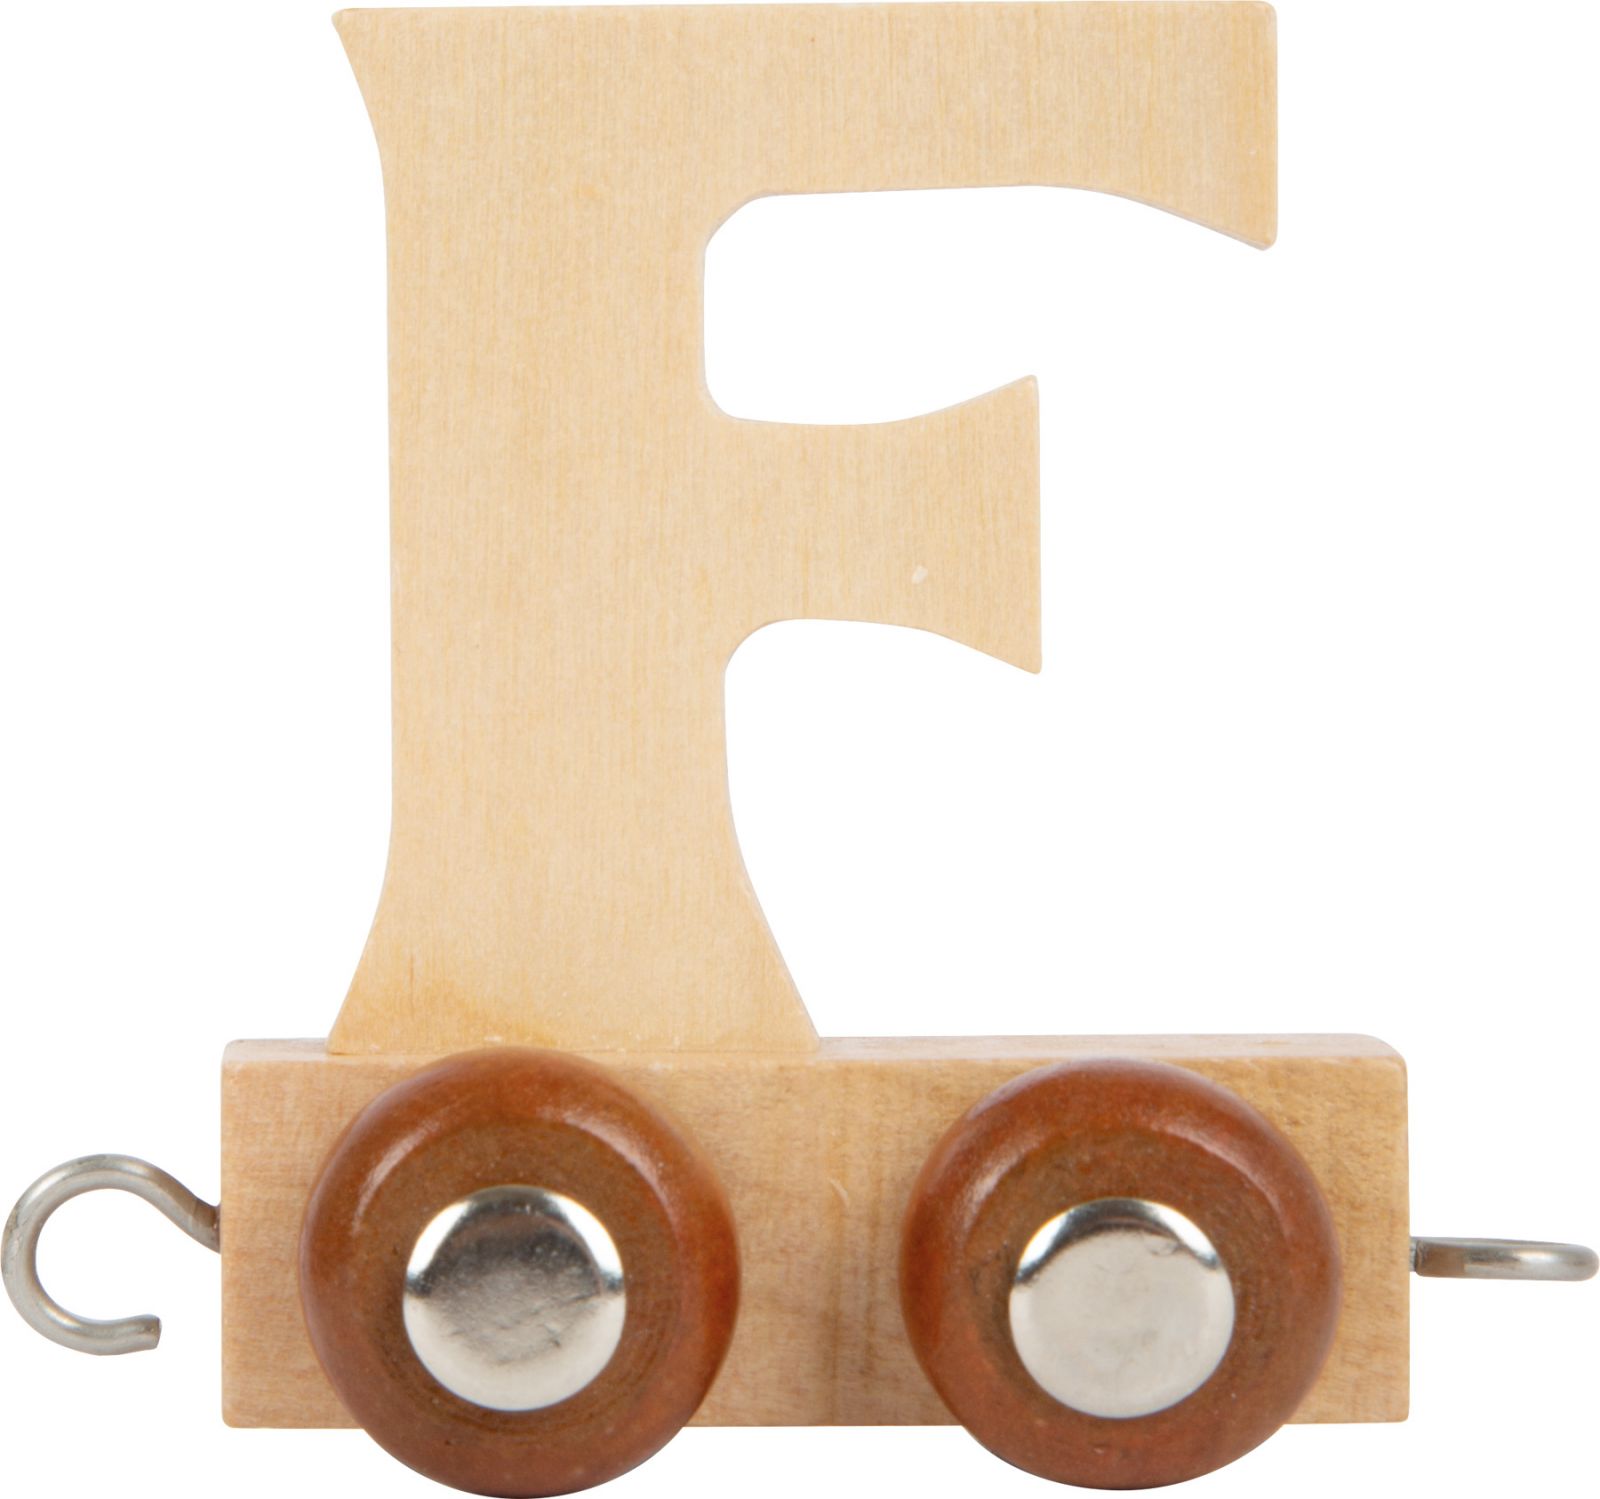 Dřevěné hračky small foot Dřevěný vláček vláčkodráhy abeceda písmeno F